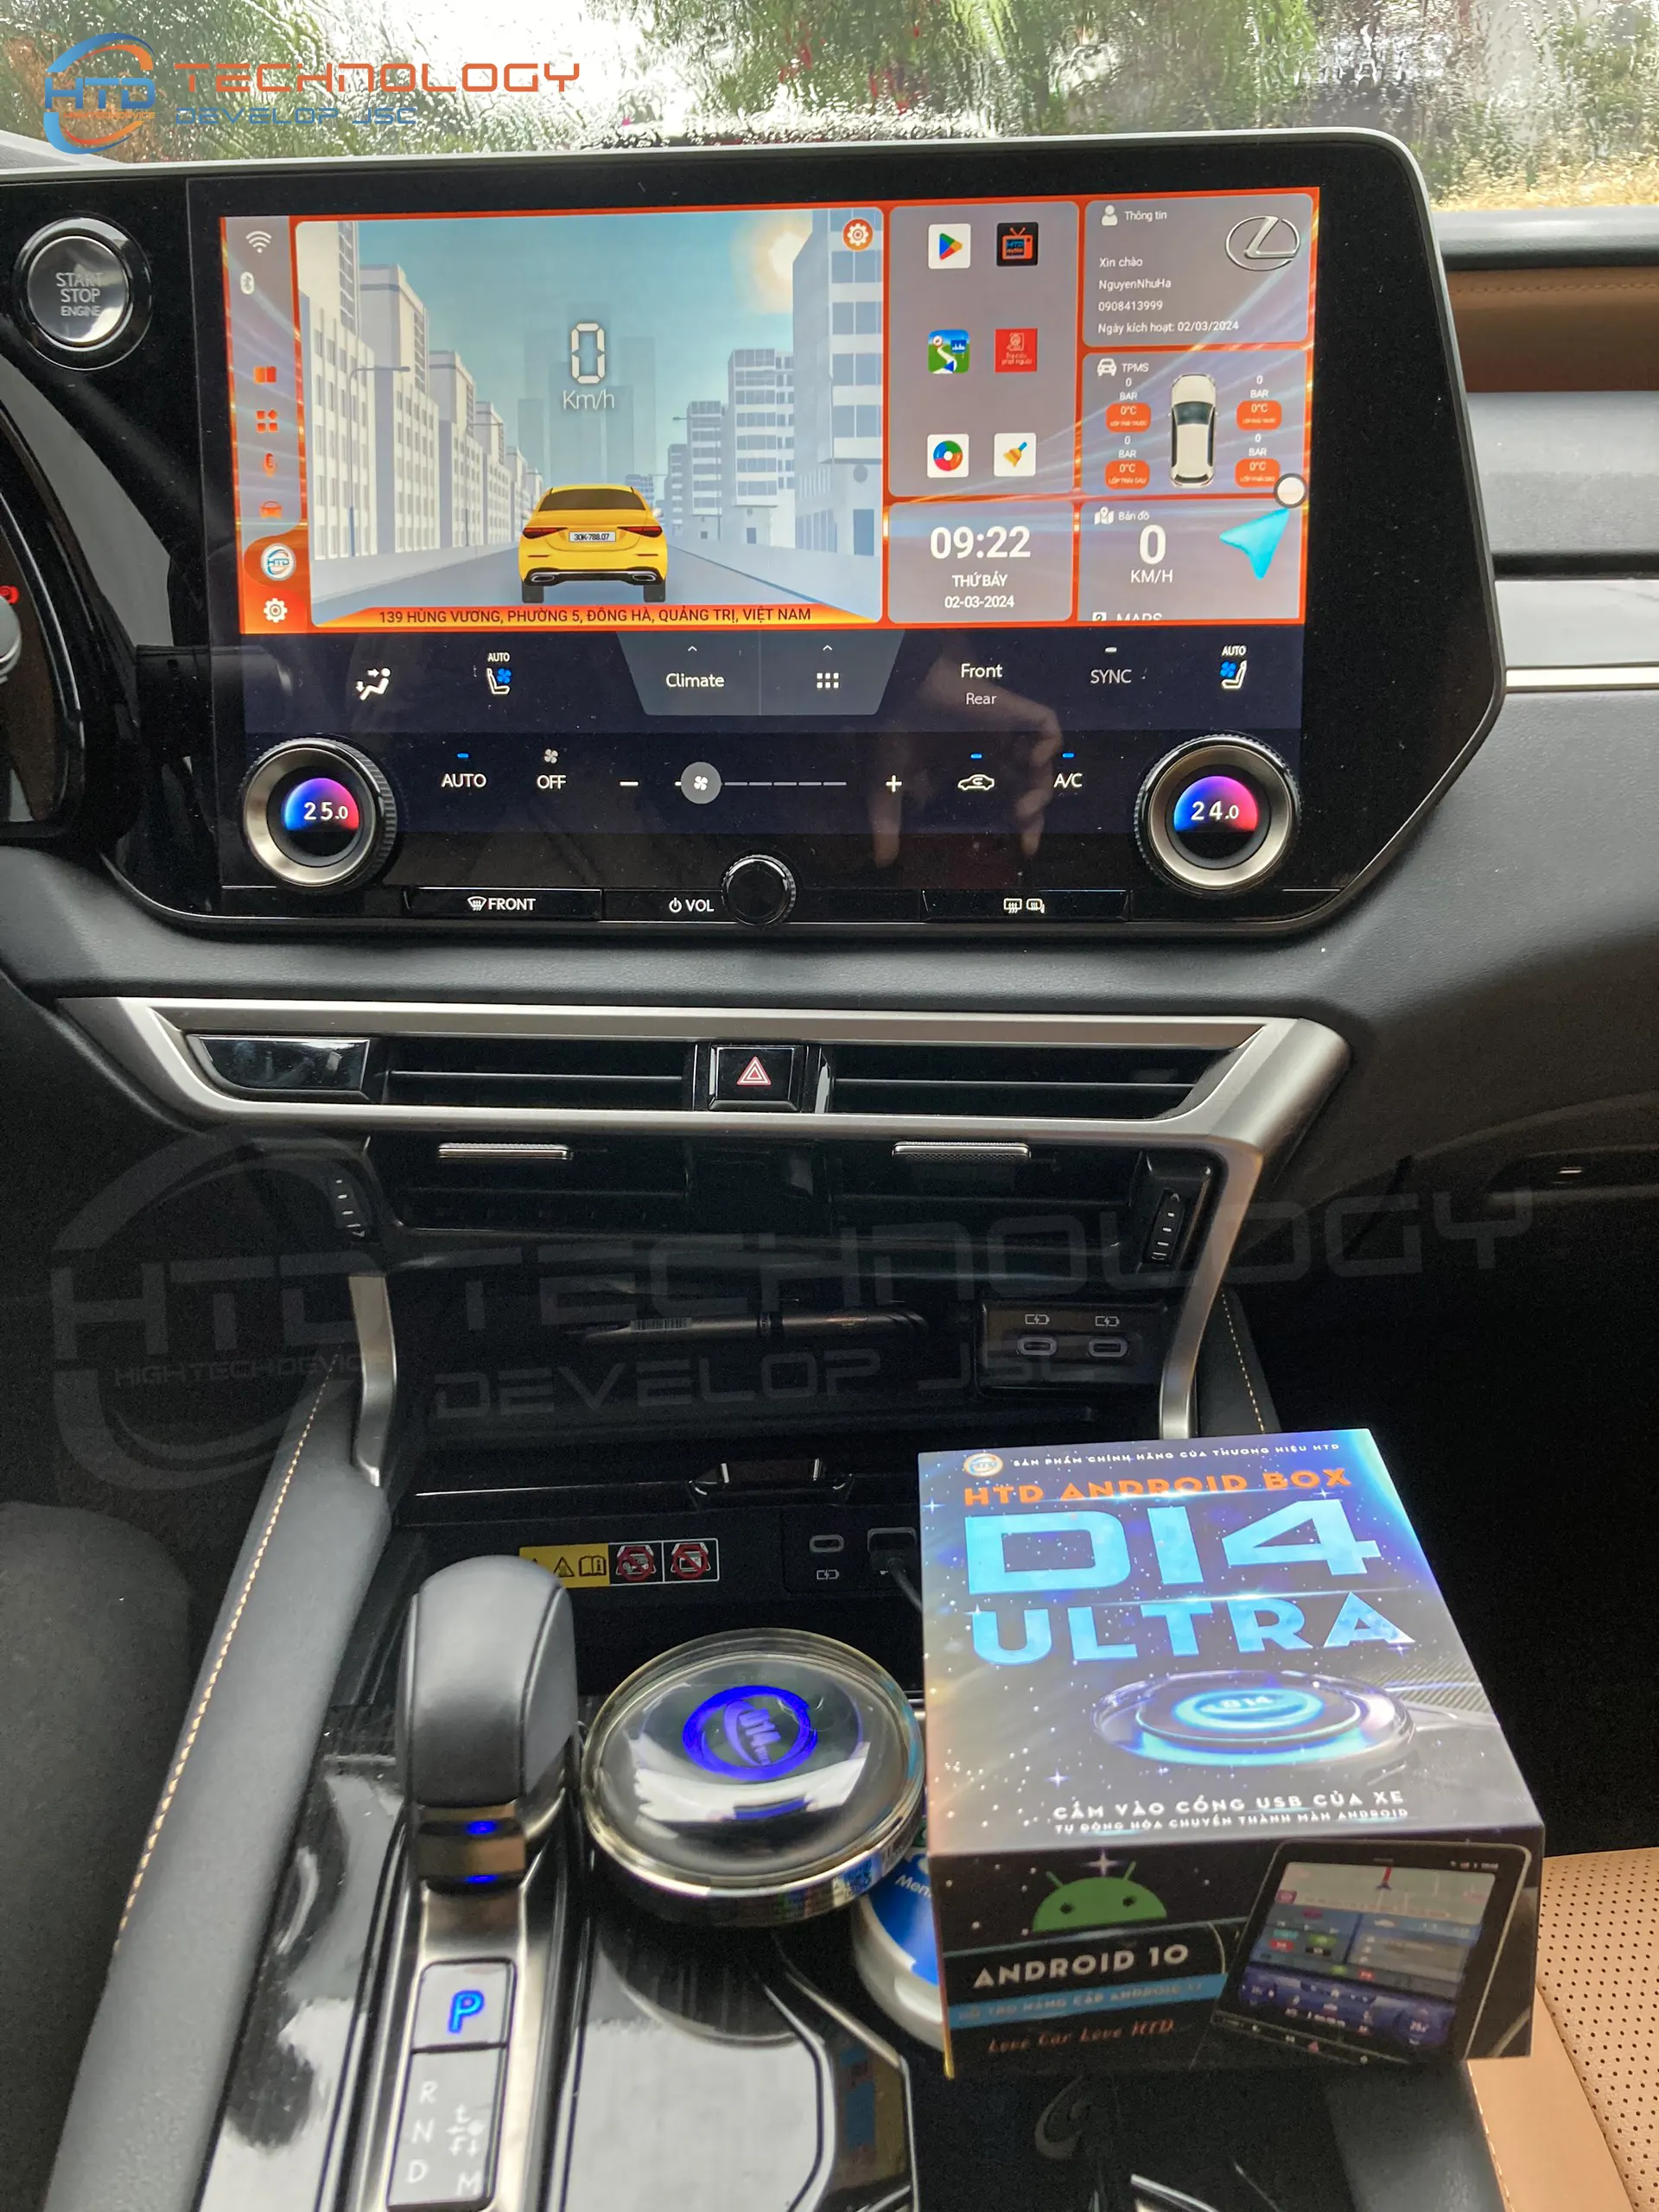 Định vị GPS được tích hợp trên Android Box cho ô tô D14 Ultra